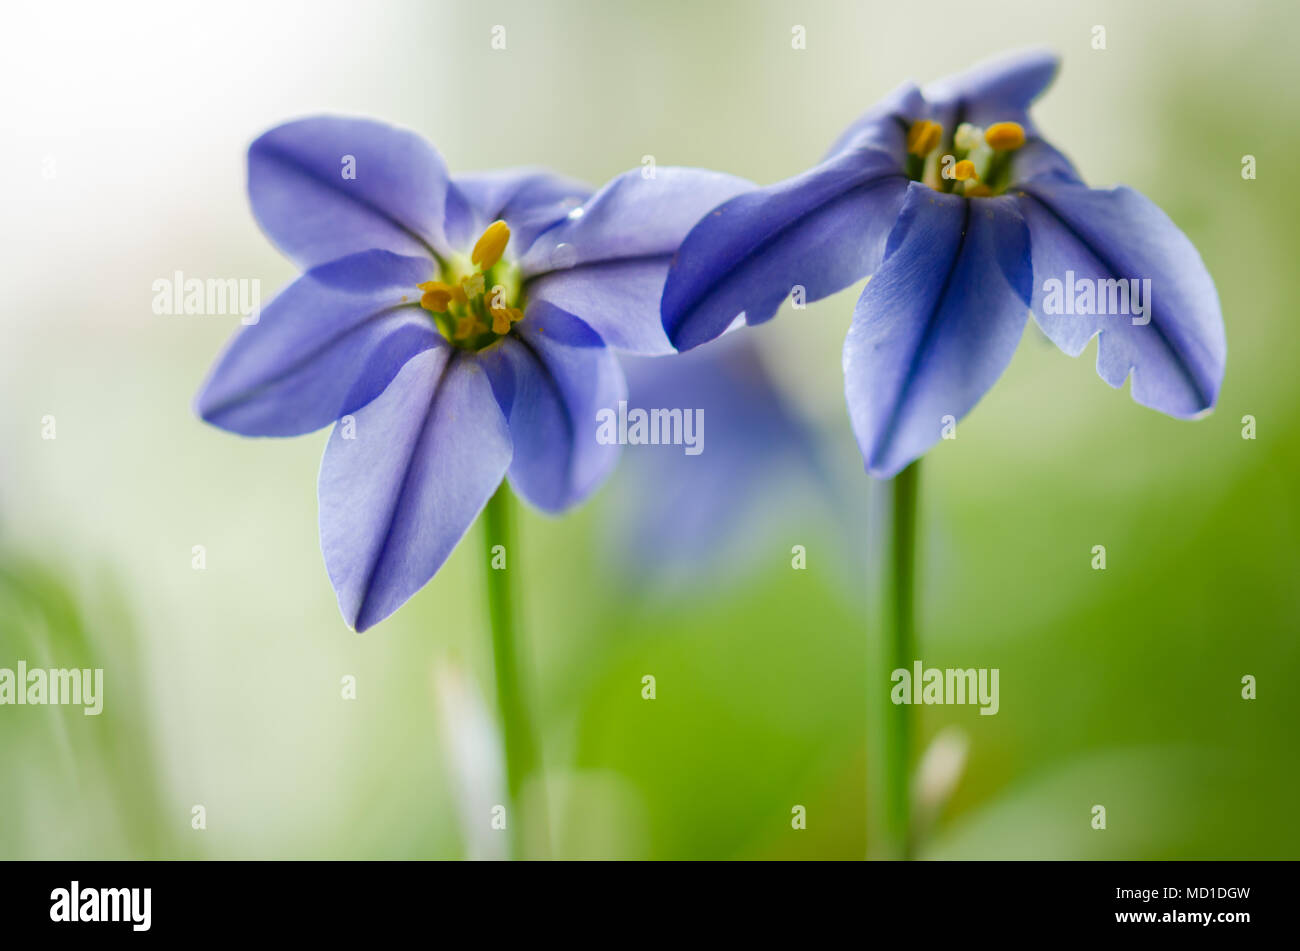 Ipheion uniflorum or flower of spring star,blue flowers,macro, Stock Photo